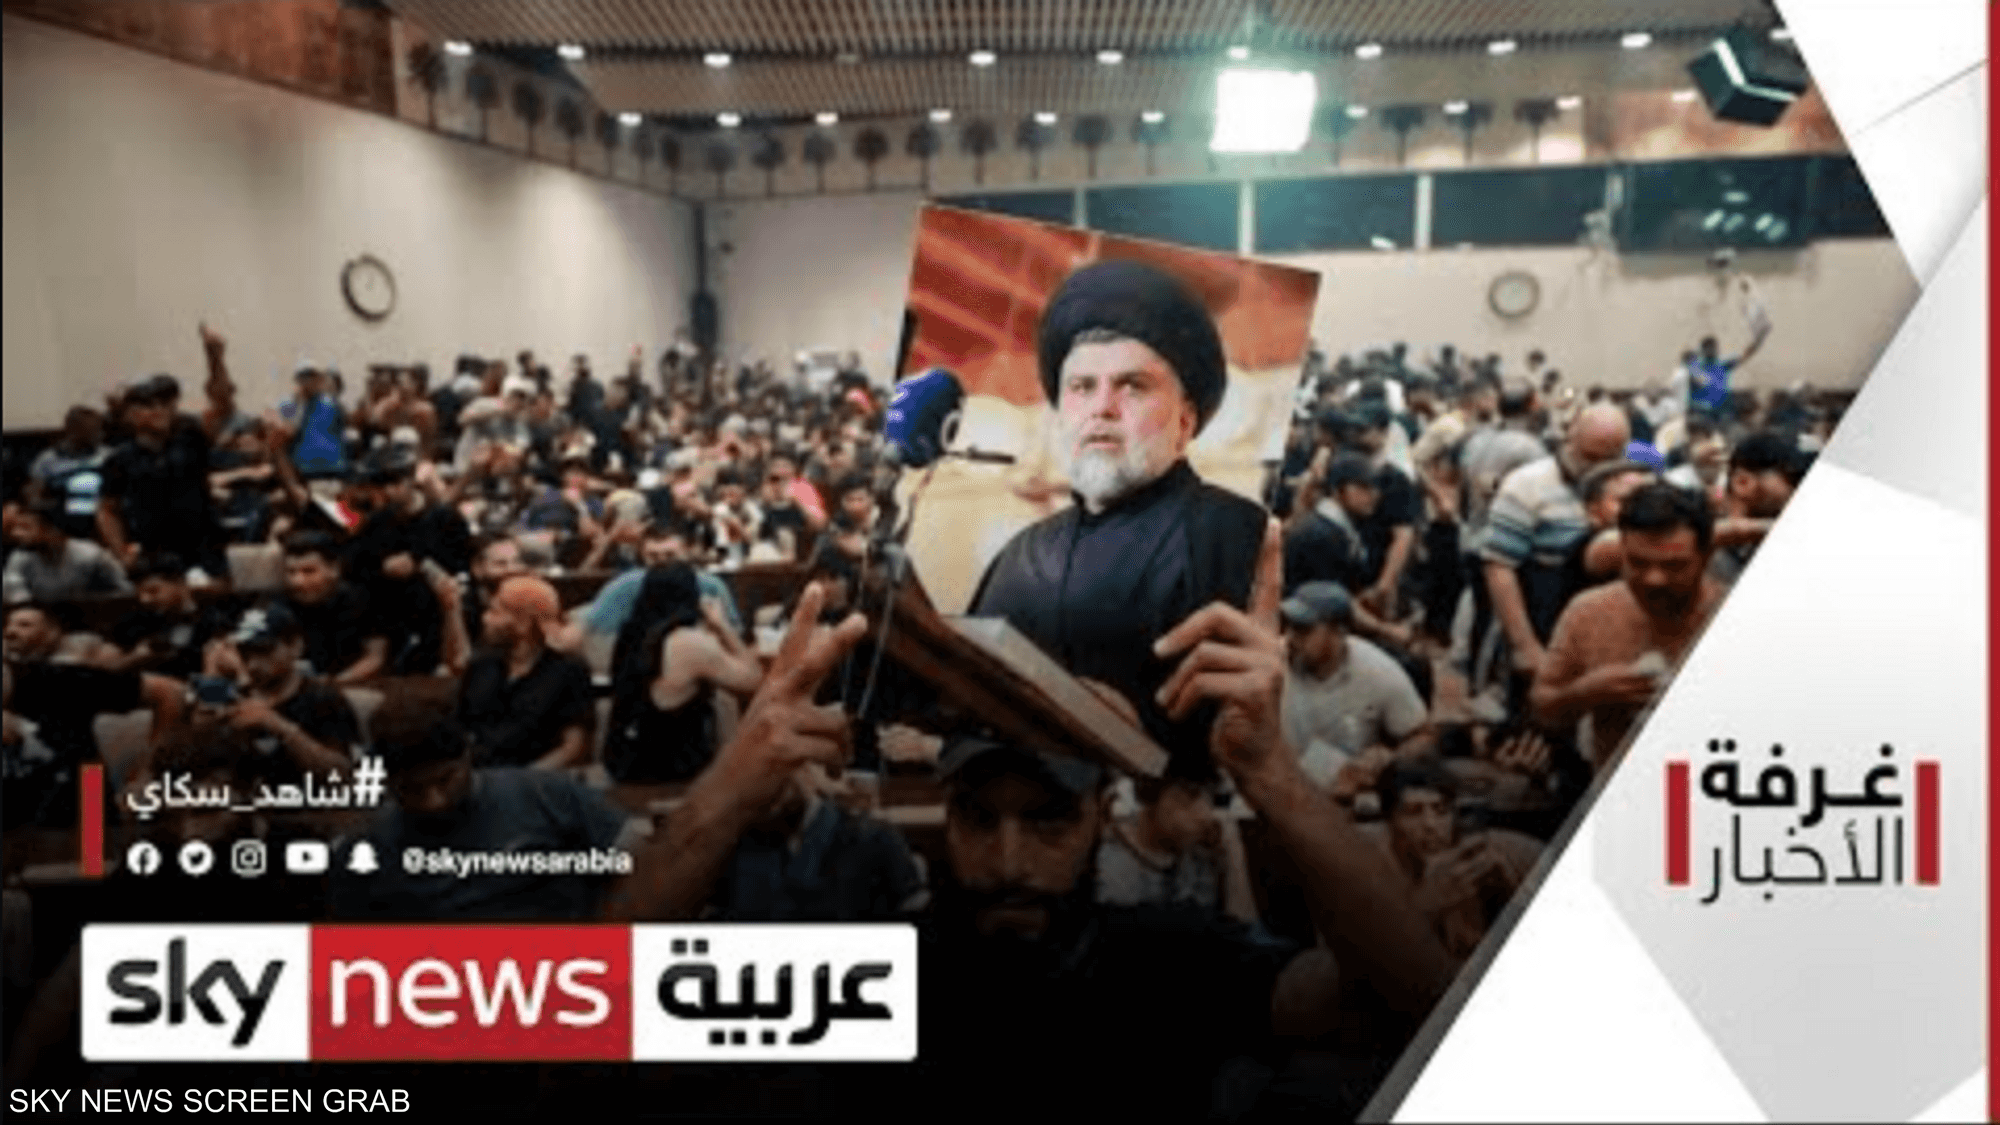 الصدر يدعو أنصاره لموصلة التظاهر لتغيير النظام السياسي